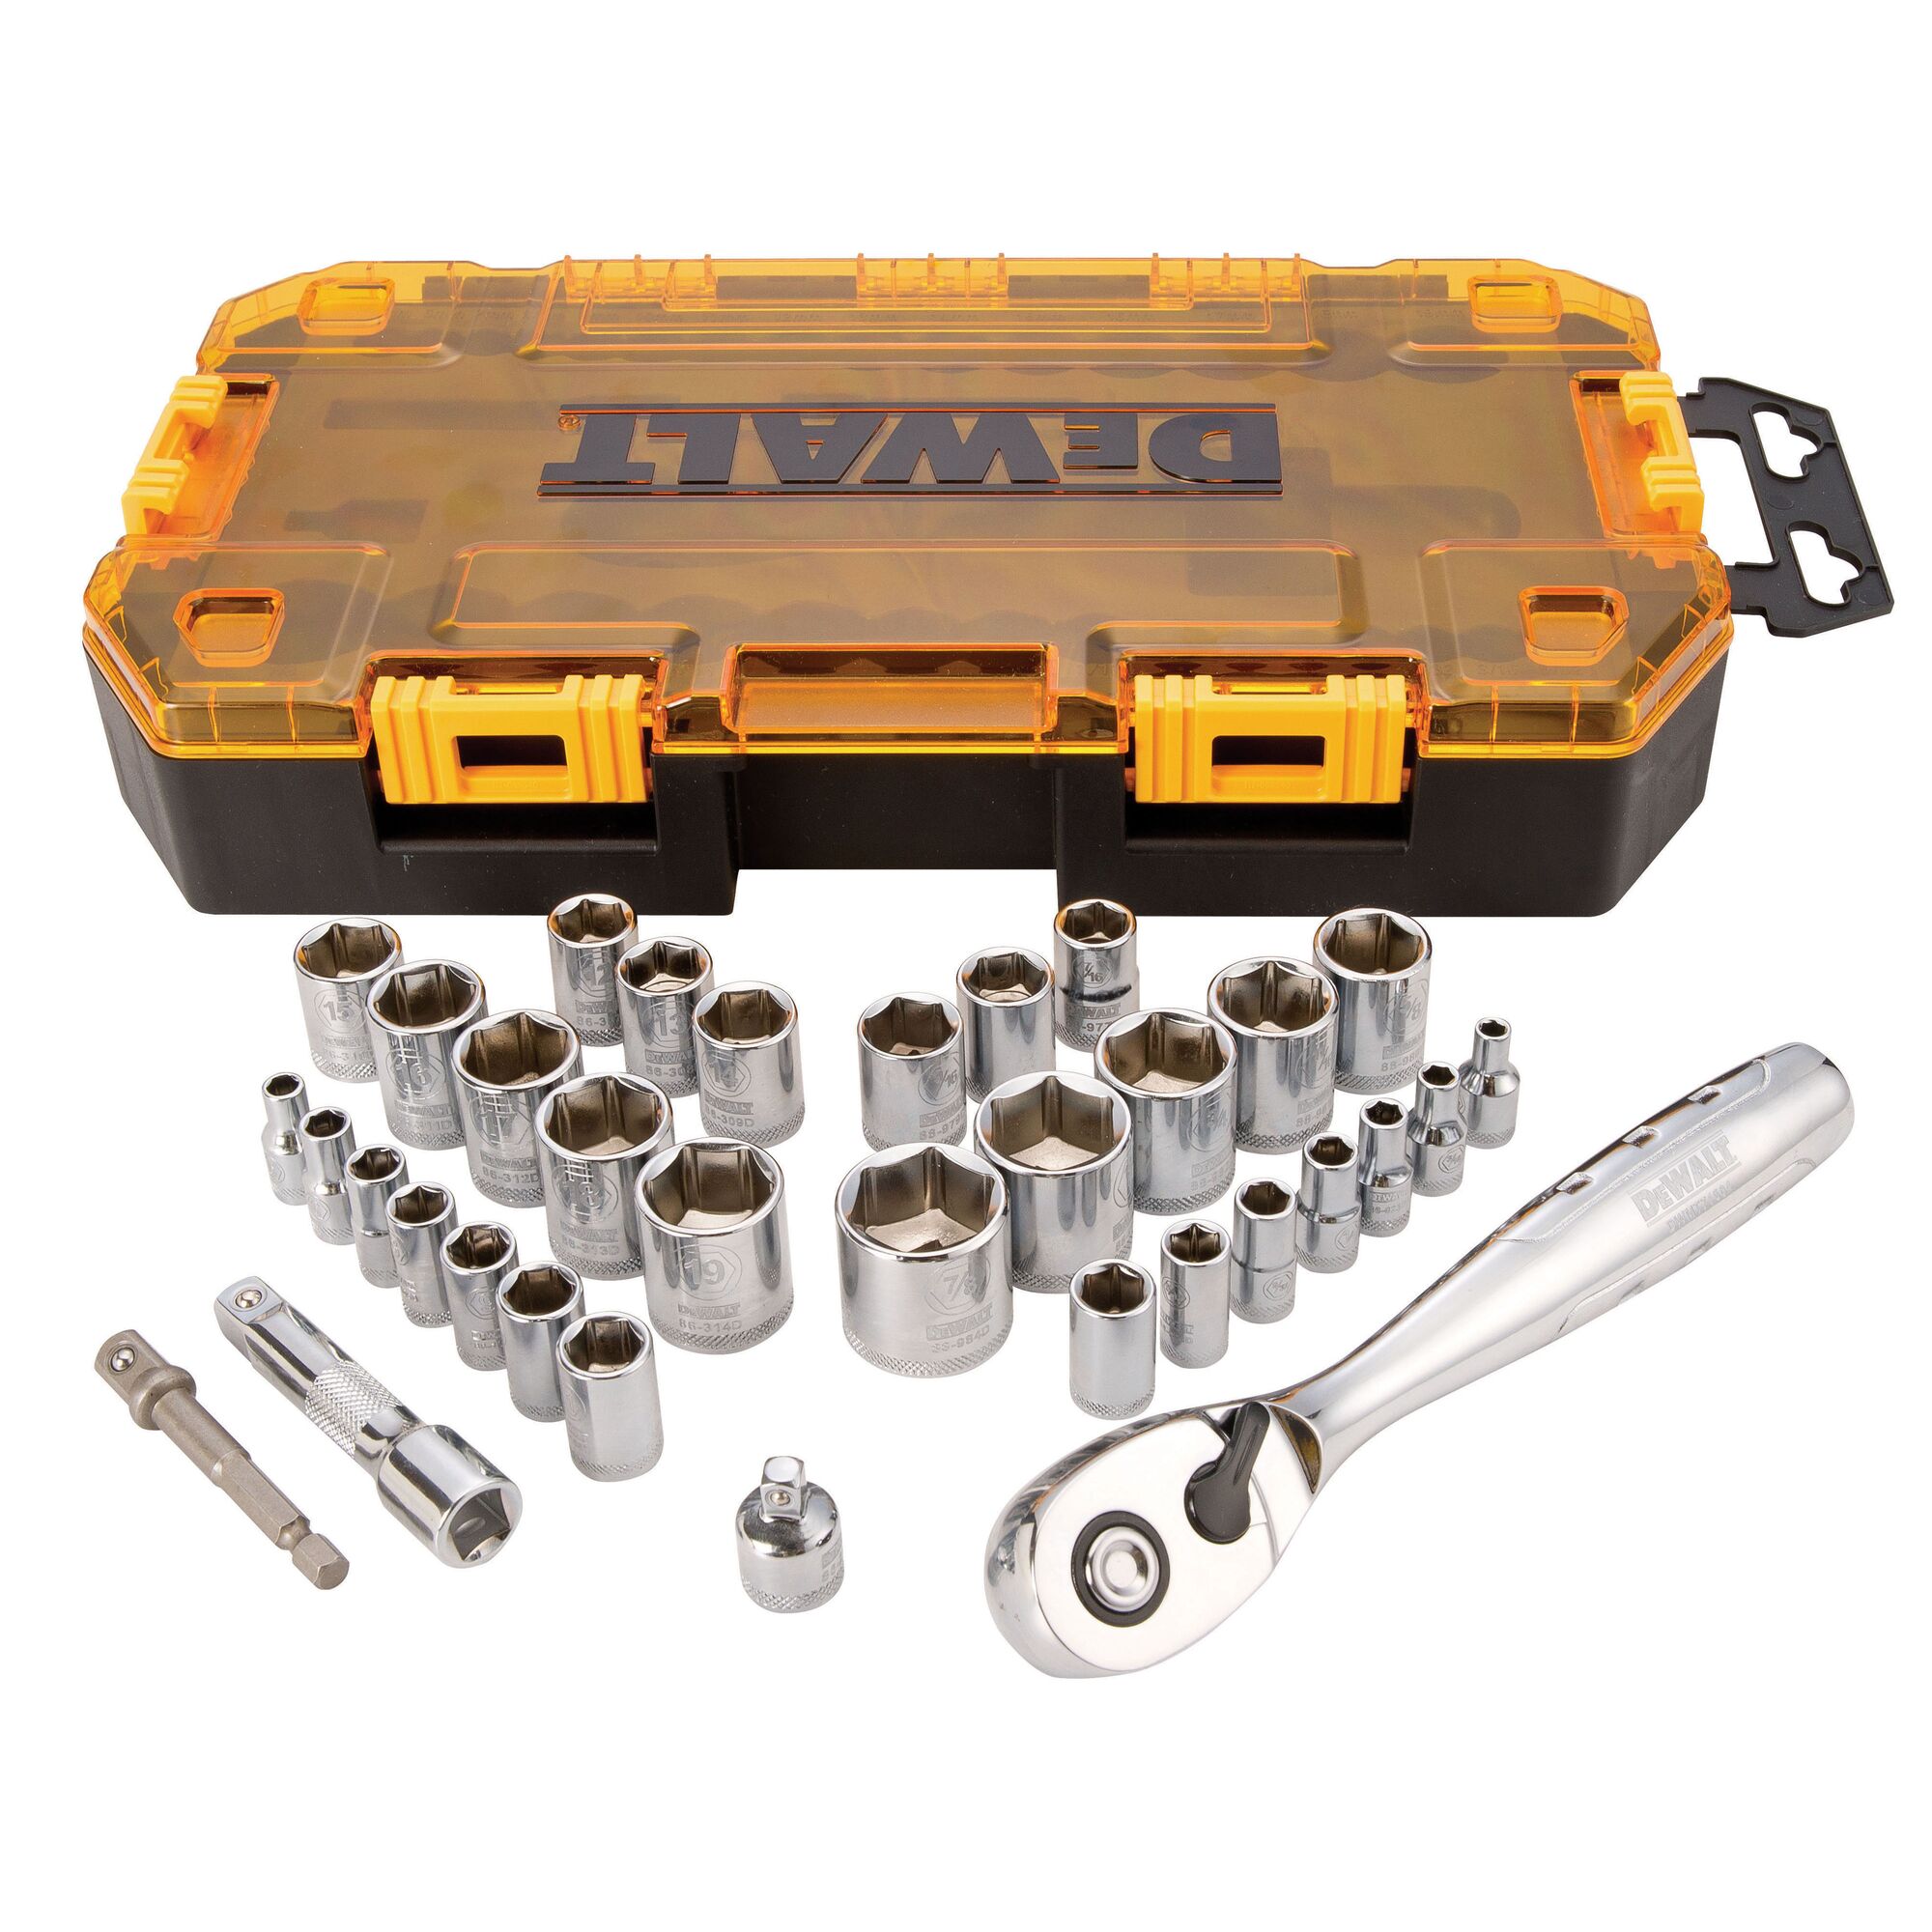 DEWALT Box Tool Kit Drive Socket Set 1/4 & 3/8 SAE/MM 34-Piece NEW DWMT73804 